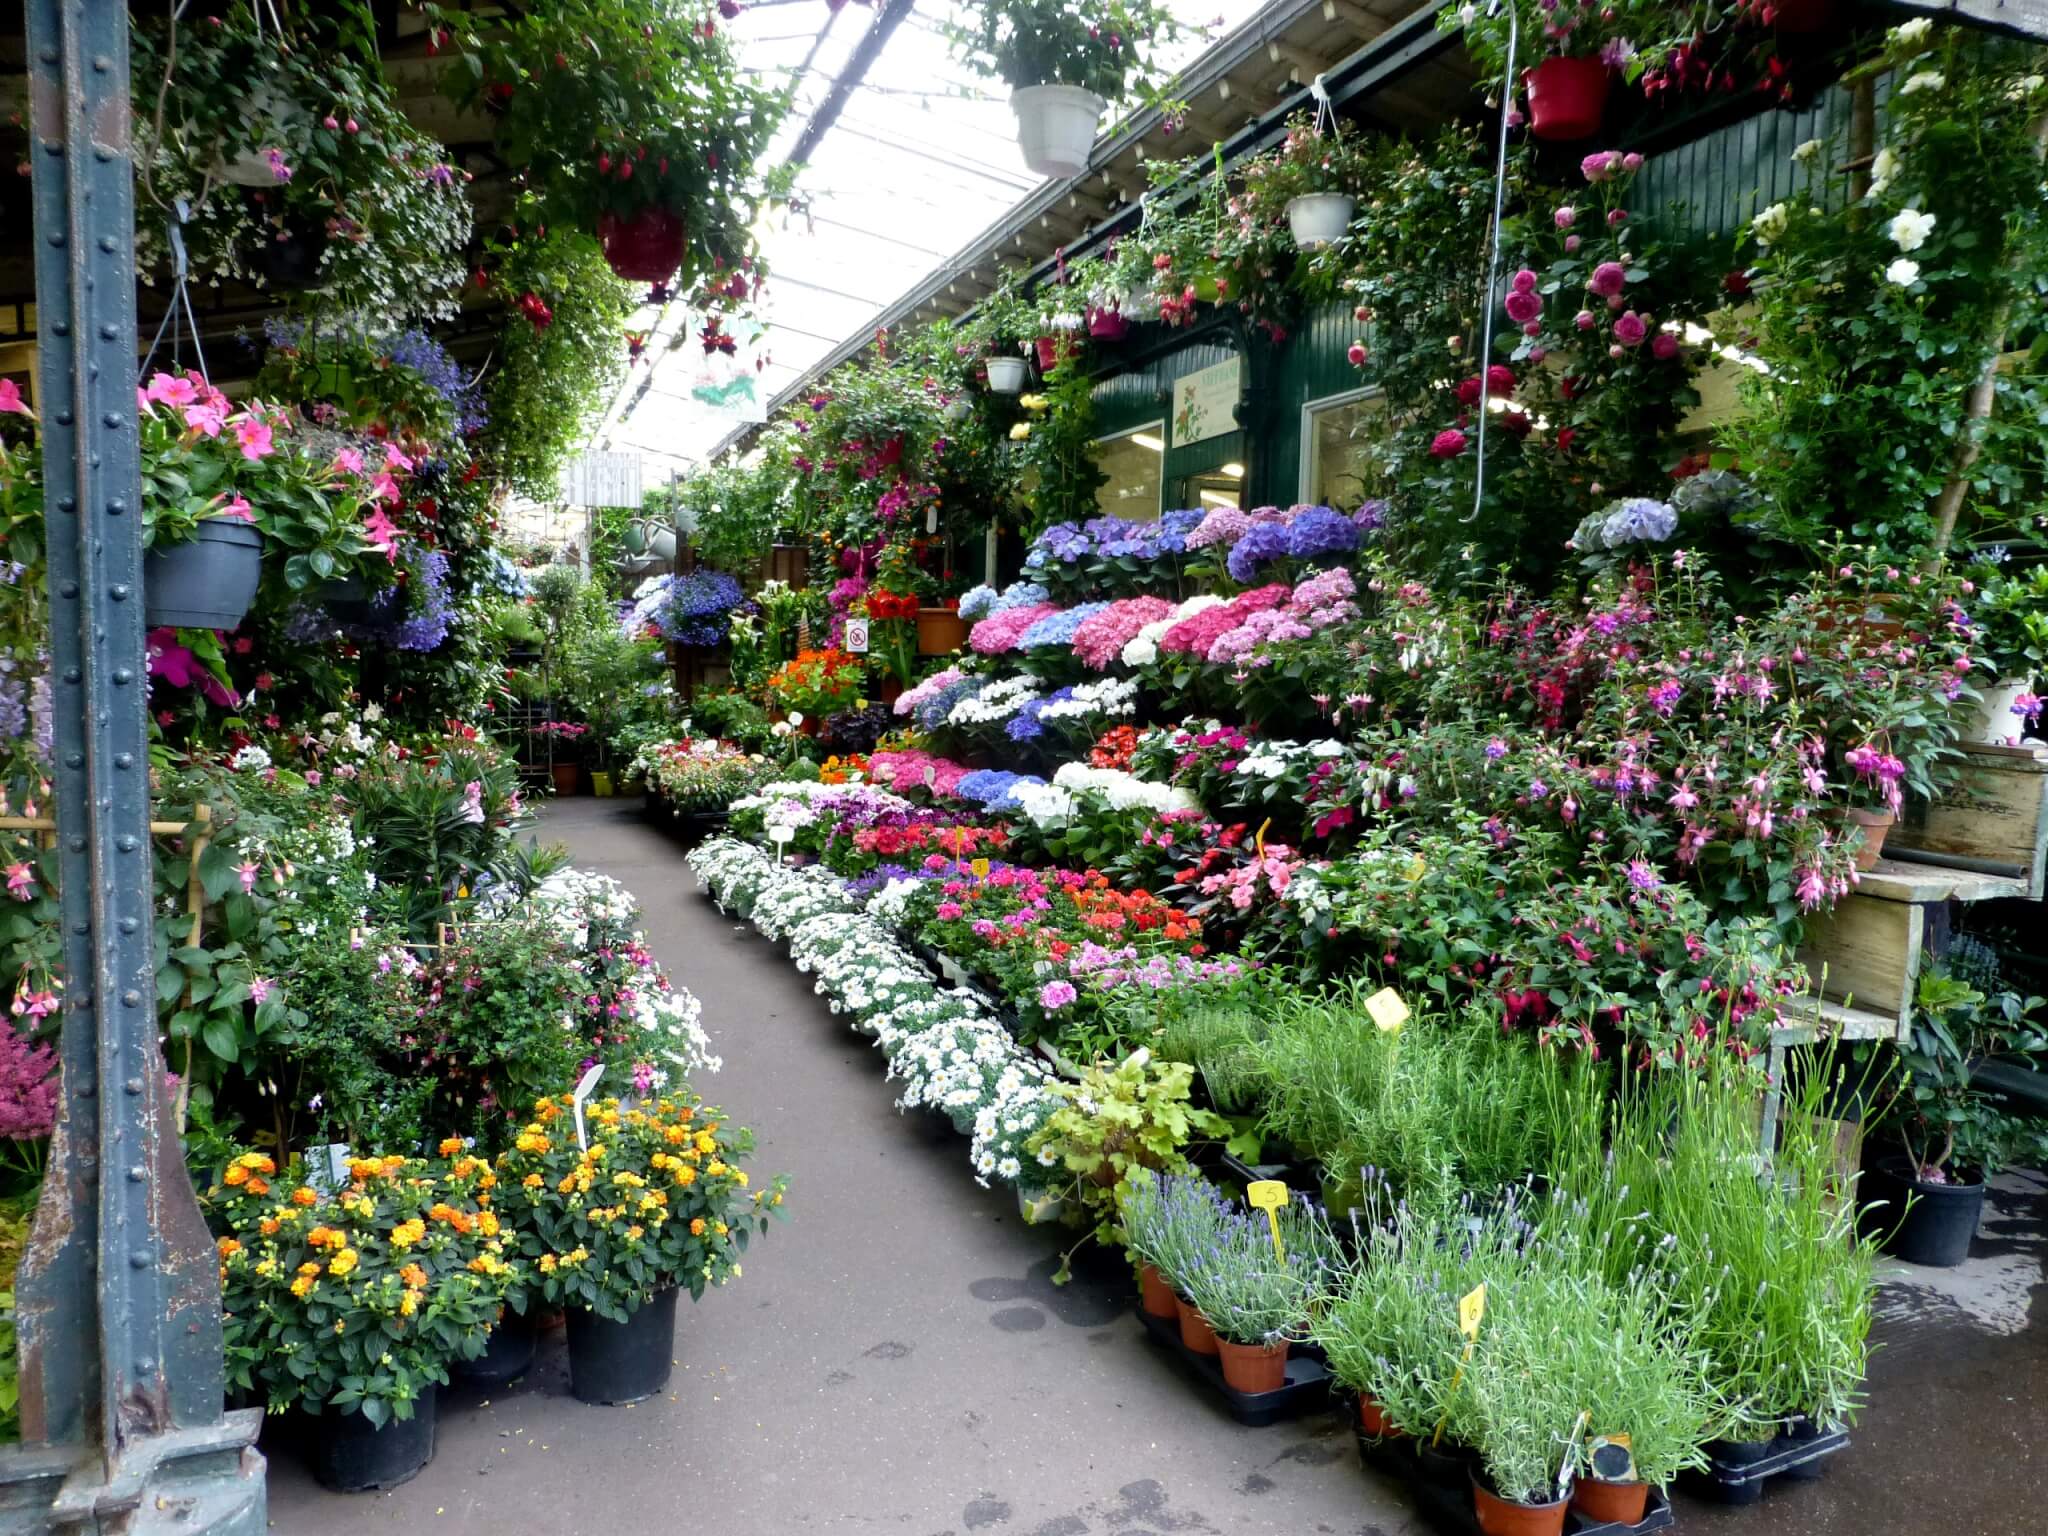 Le marché aux fleurs de l'île de la Cité va se refaire une beauté